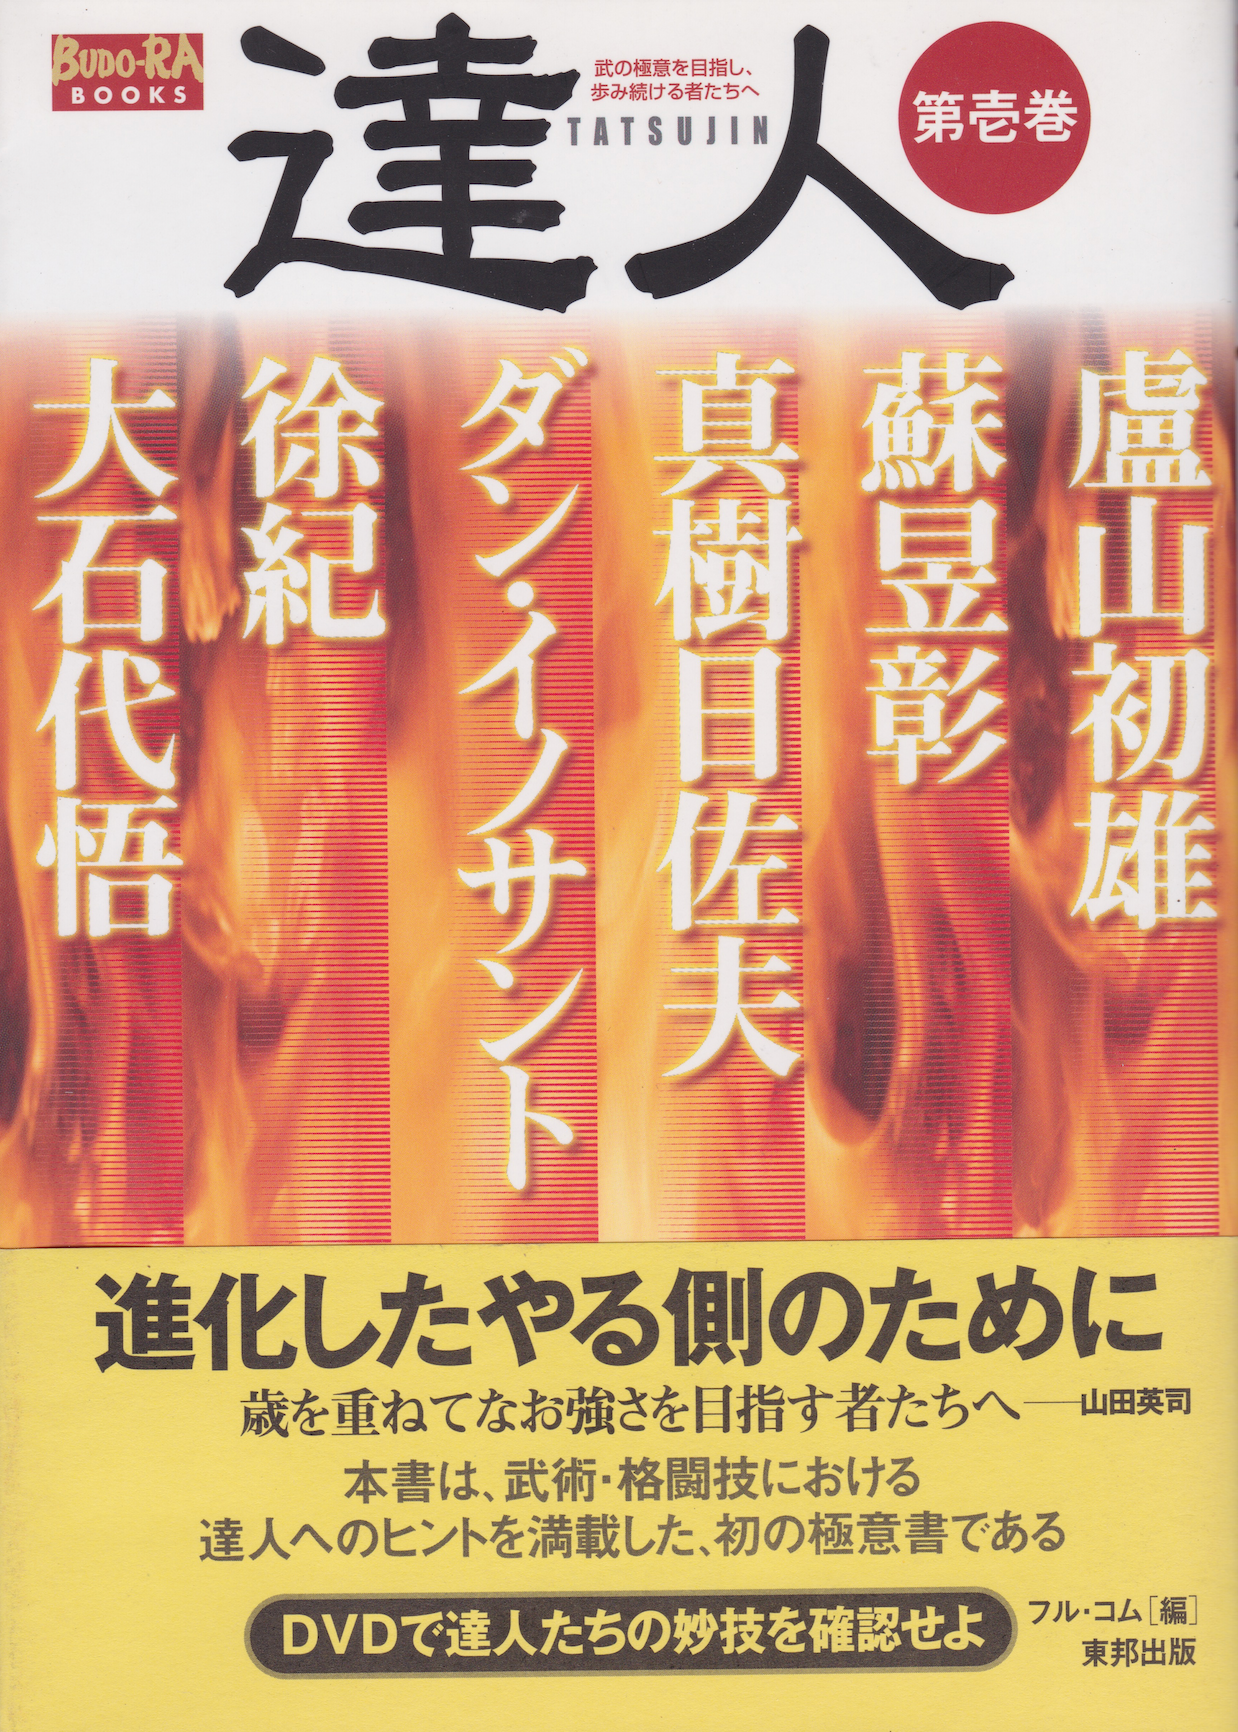 Tatsujin Vol 1: Para aquellos que buscan los secretos de las artes marciales Libro y DVD (usado)